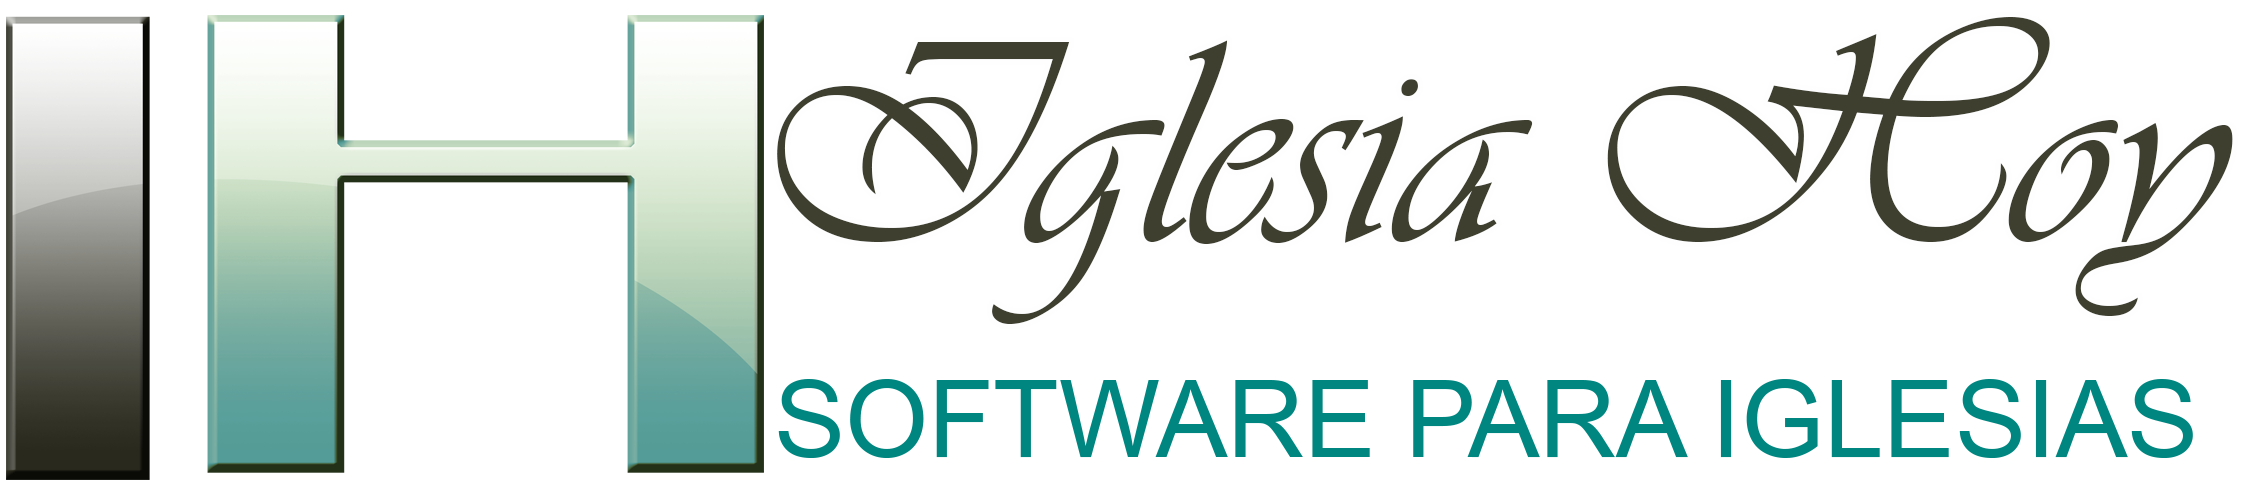 Iglesia HOY Software – Software para iglesias